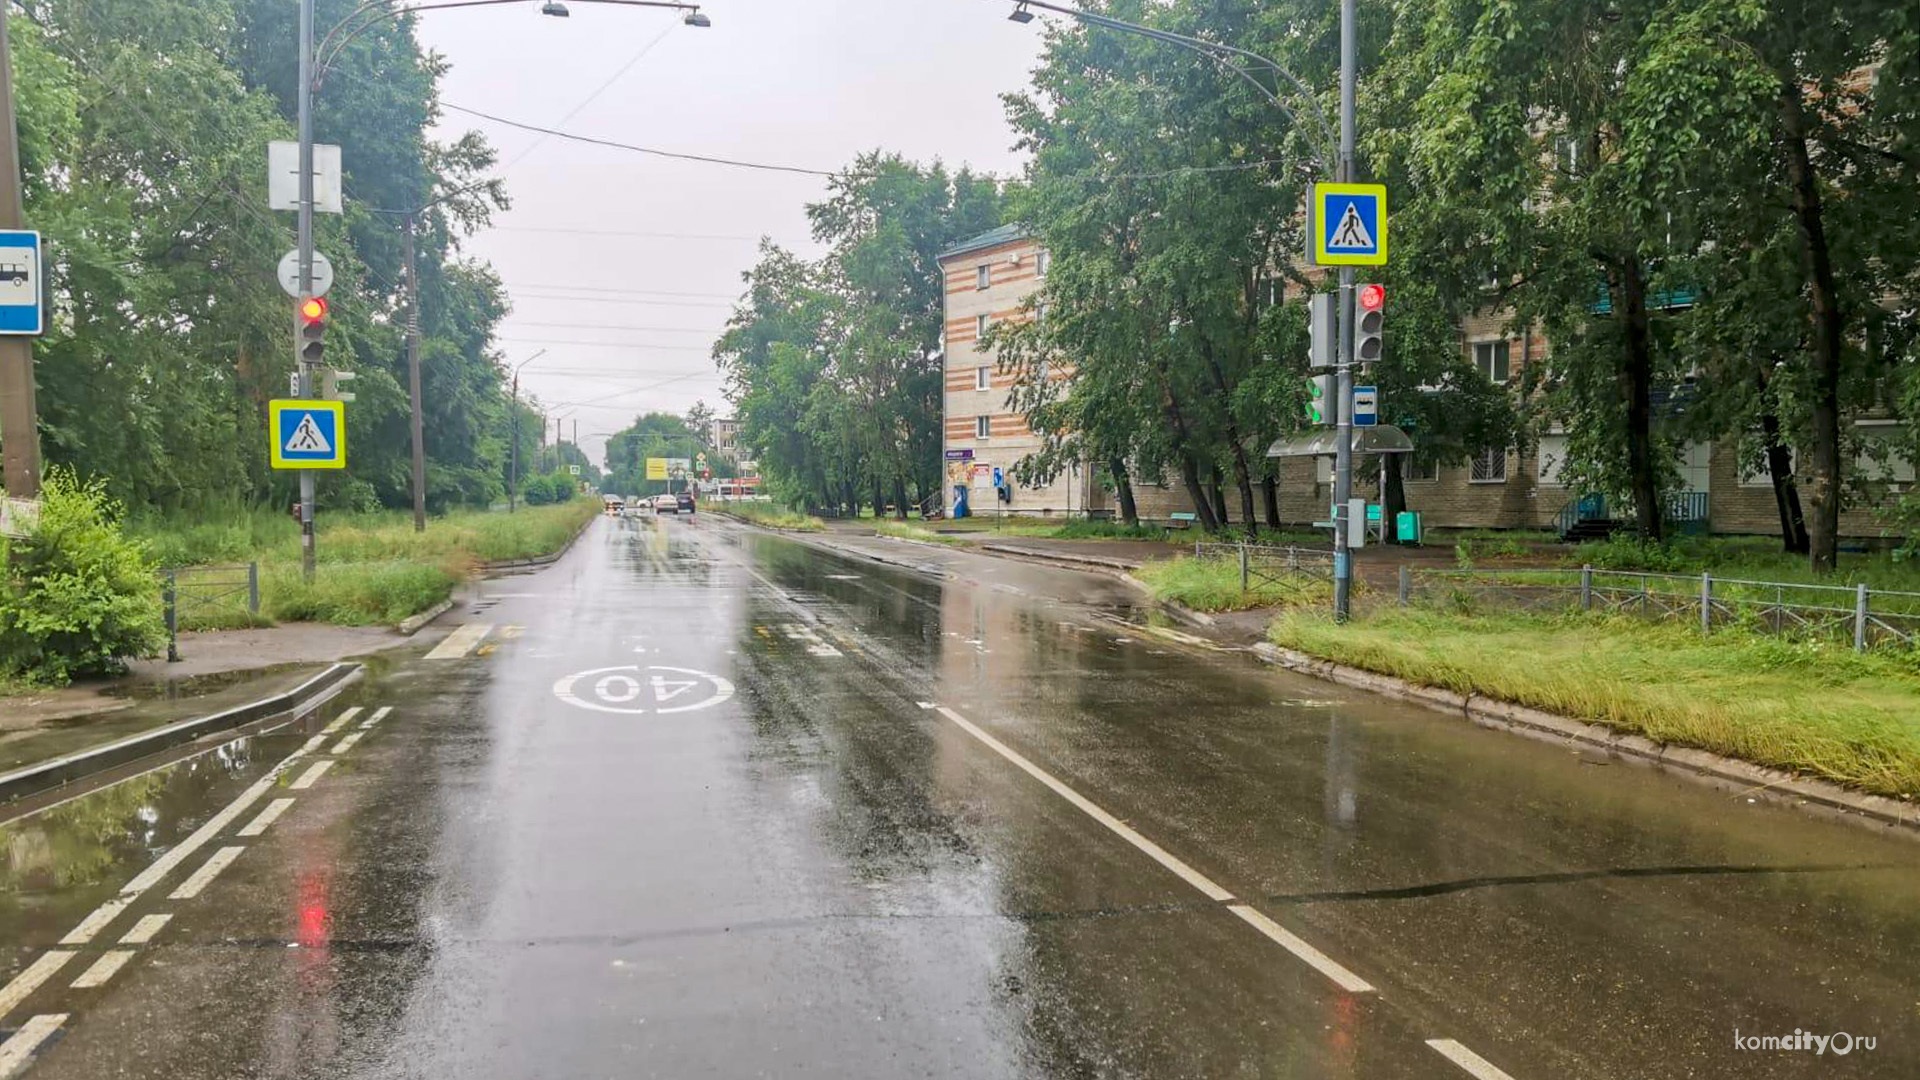 Водителя, сбившего пешехода и скрывшегося с места ДТП, разыскивают в Комсомольске-на-Амуре